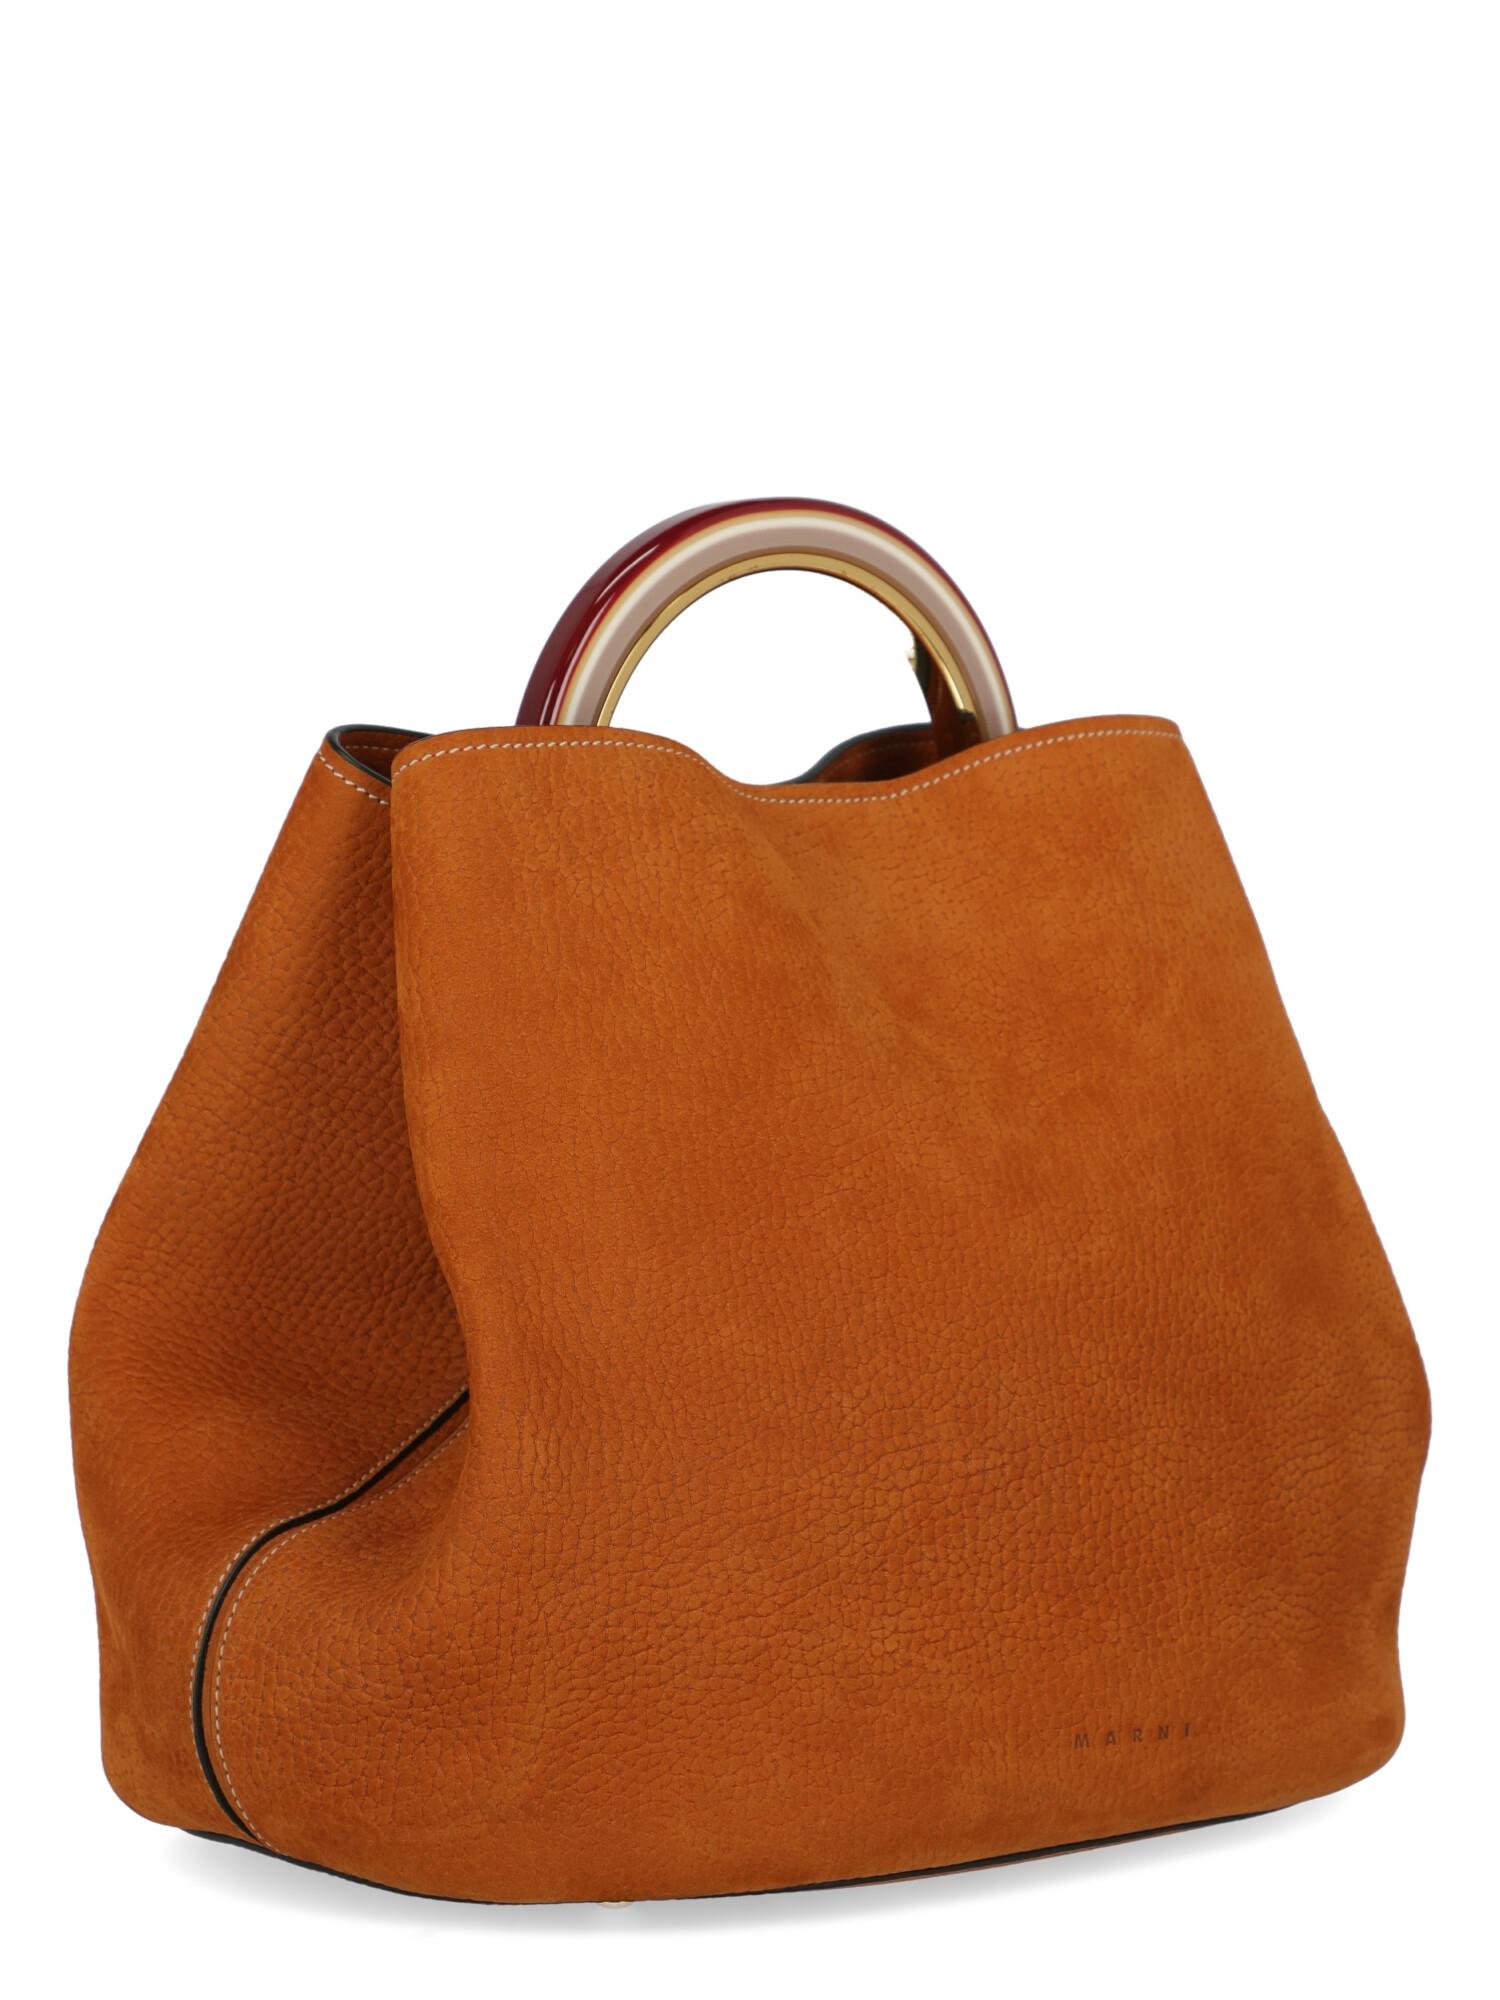 orange handbags for women